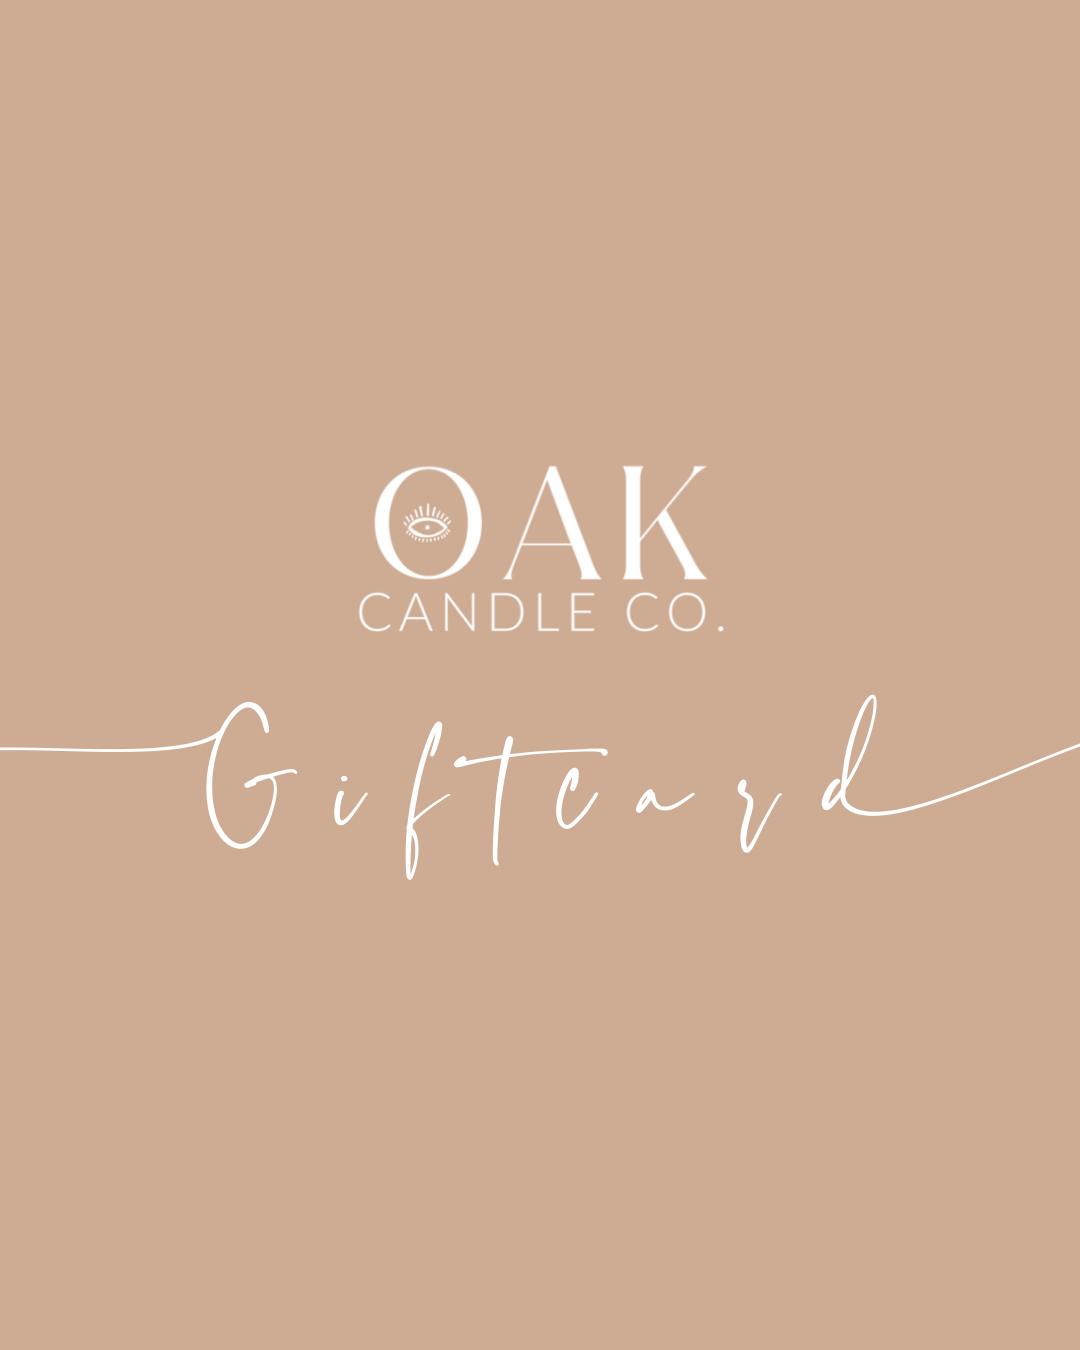 Oak Candle Co. Giftcard